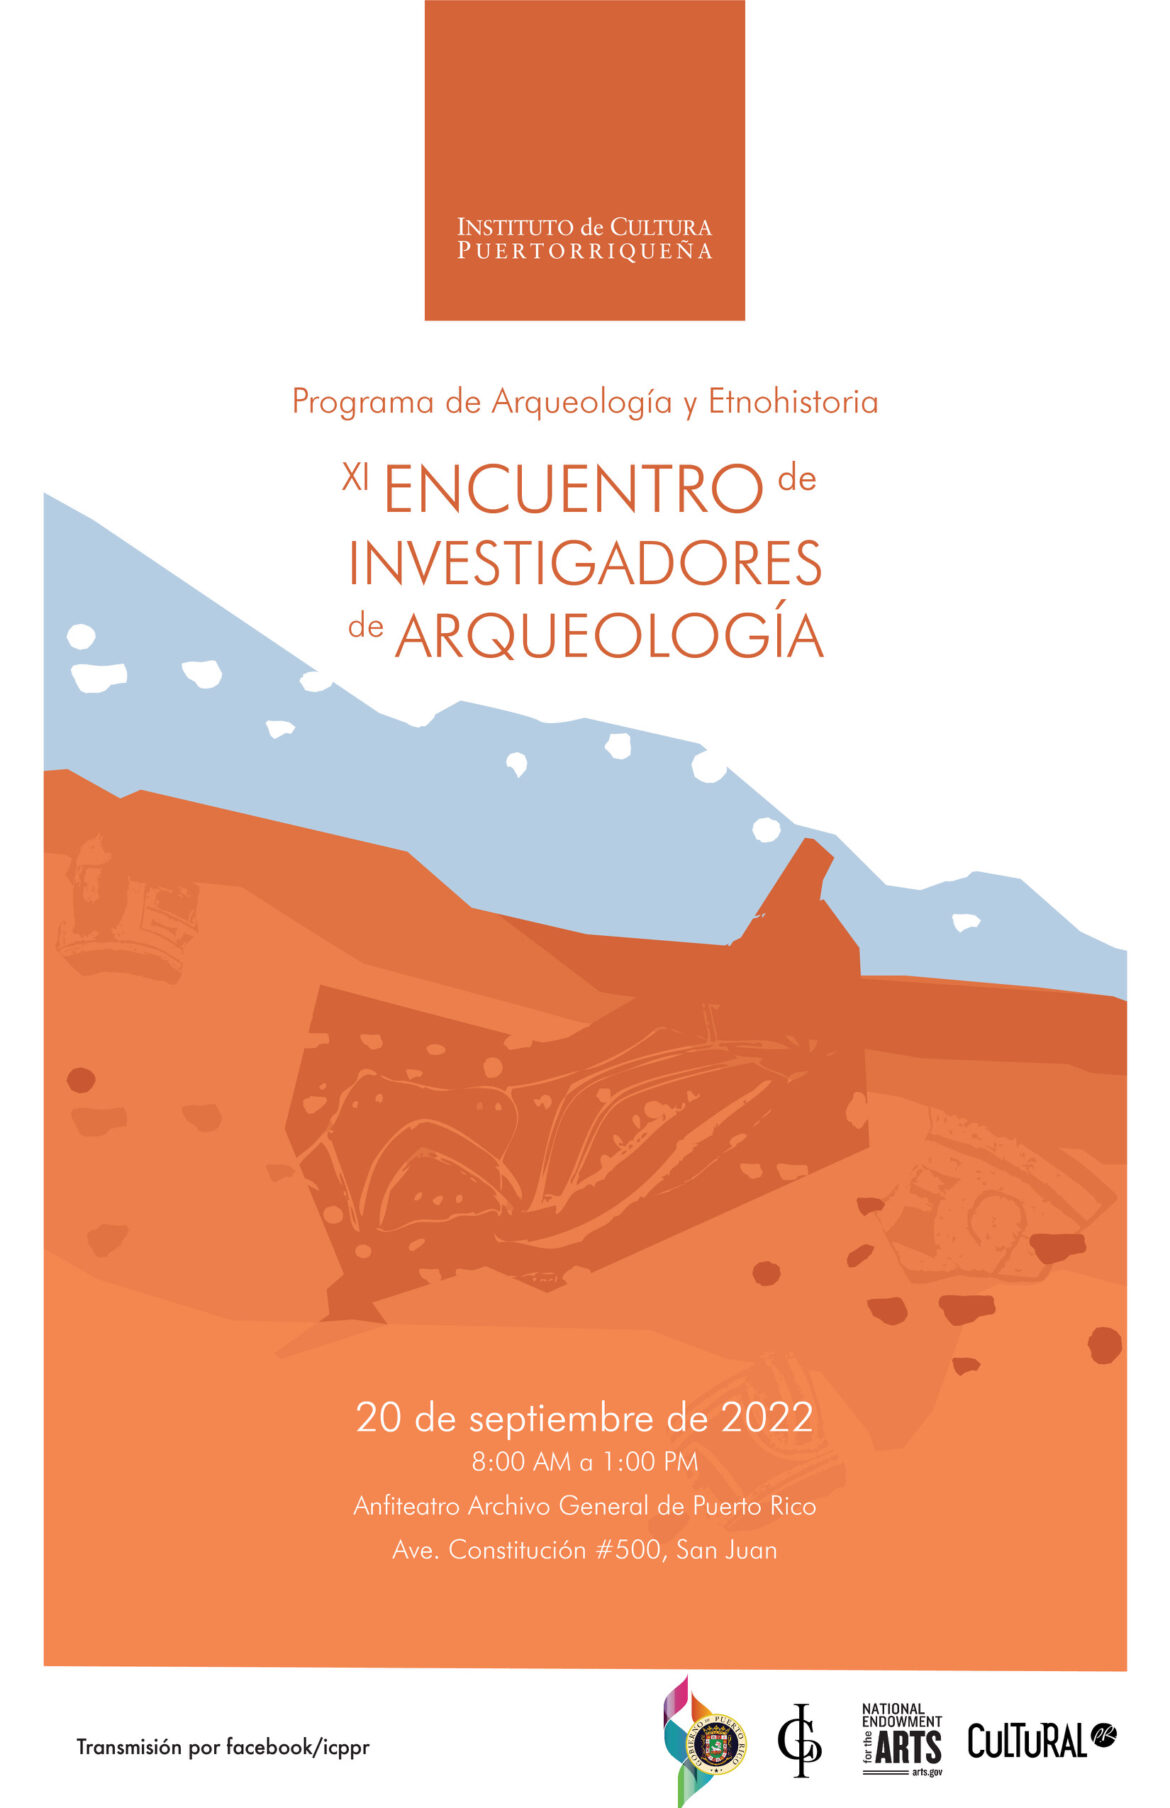 Instituto de Cultura Puertorriqueña reúne a reconocidos arqueólogos en el XI Encuentro de Investigadores de Arqueología